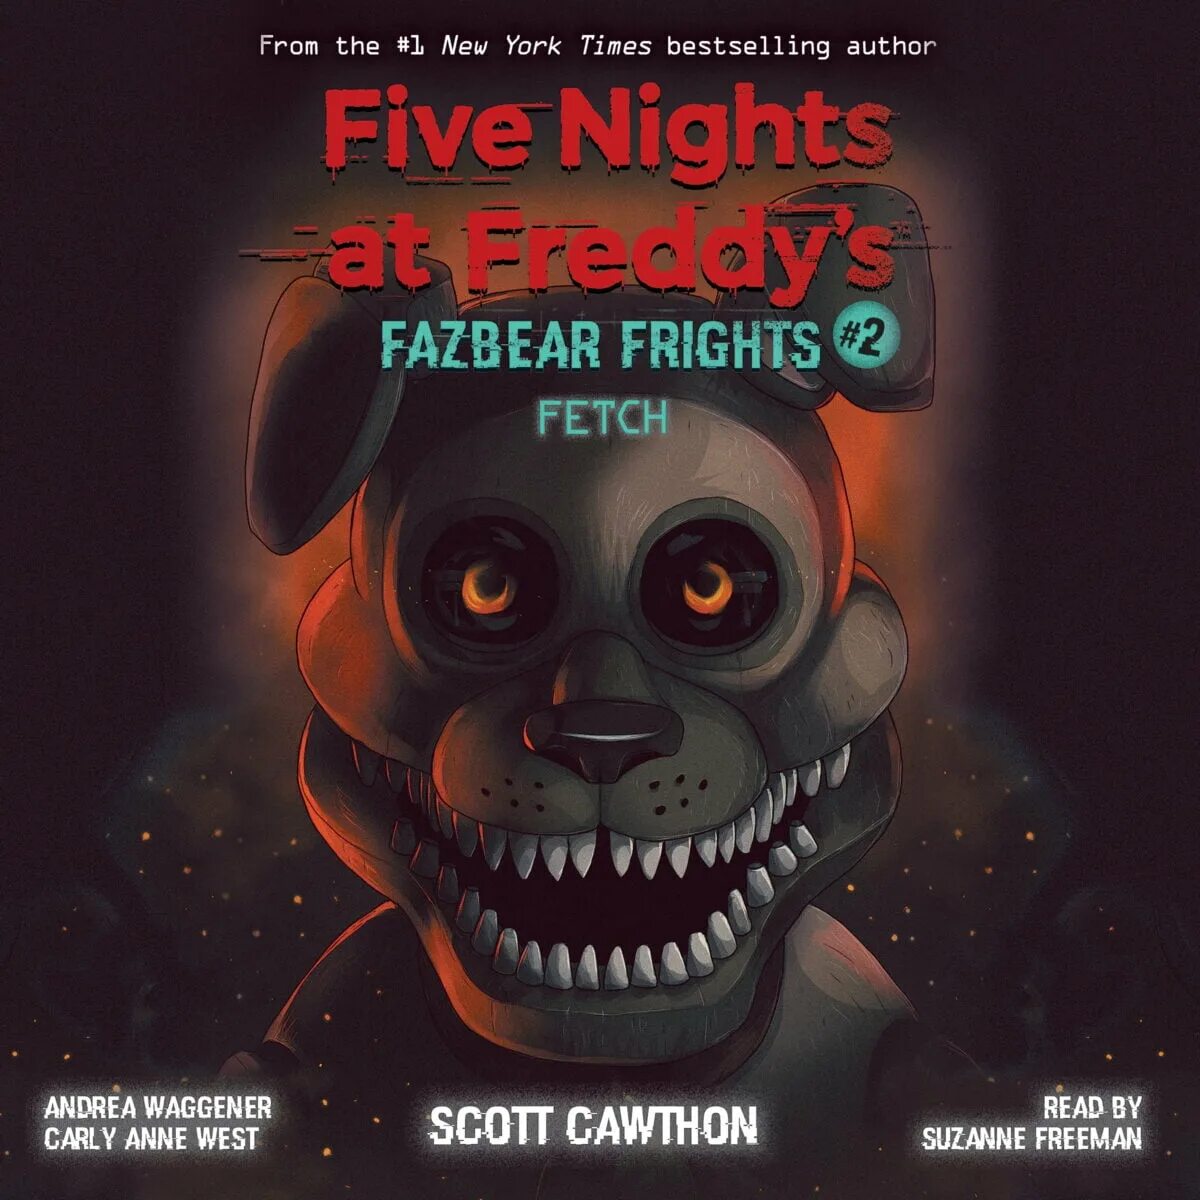 Ужасы фнаф книга. Книга Fazbear's Fright. Five Nights at Freddy s книга Fazbear Fright. Fazbear Frights книги. Книга Фредди Скотт Коутон.